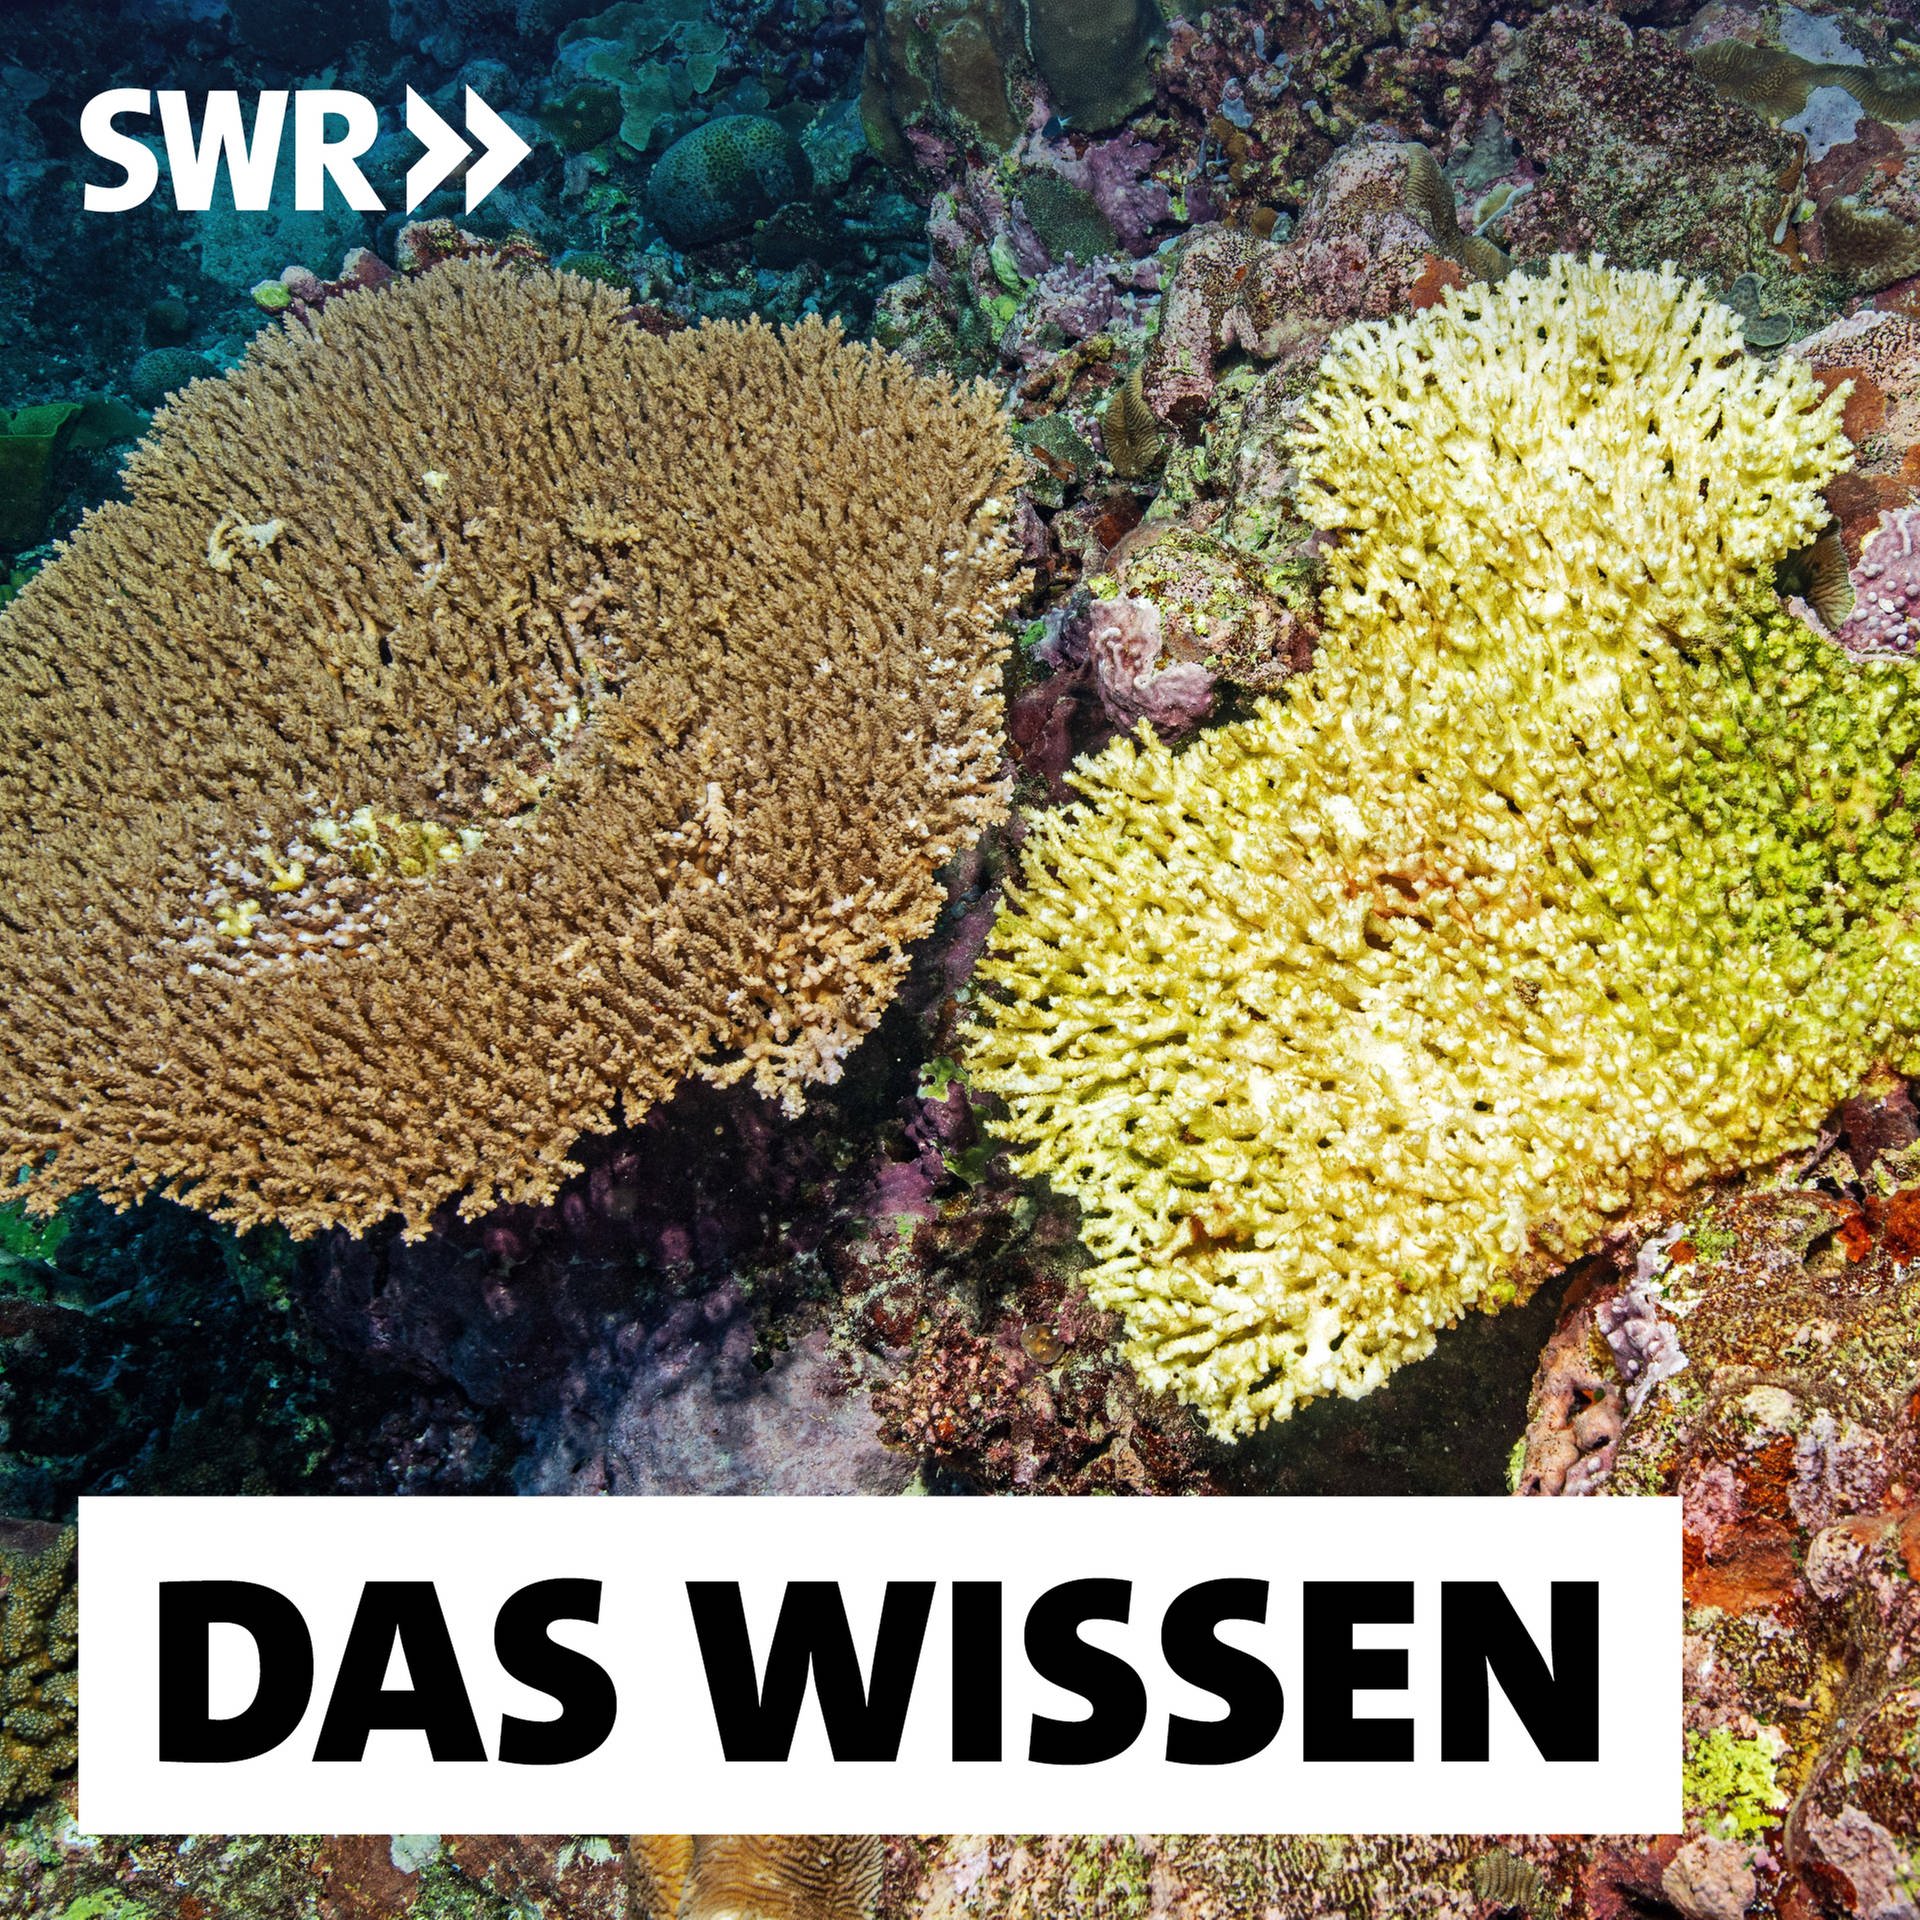 Korallenbleiche – Wie lassen sich die Riffe retten?